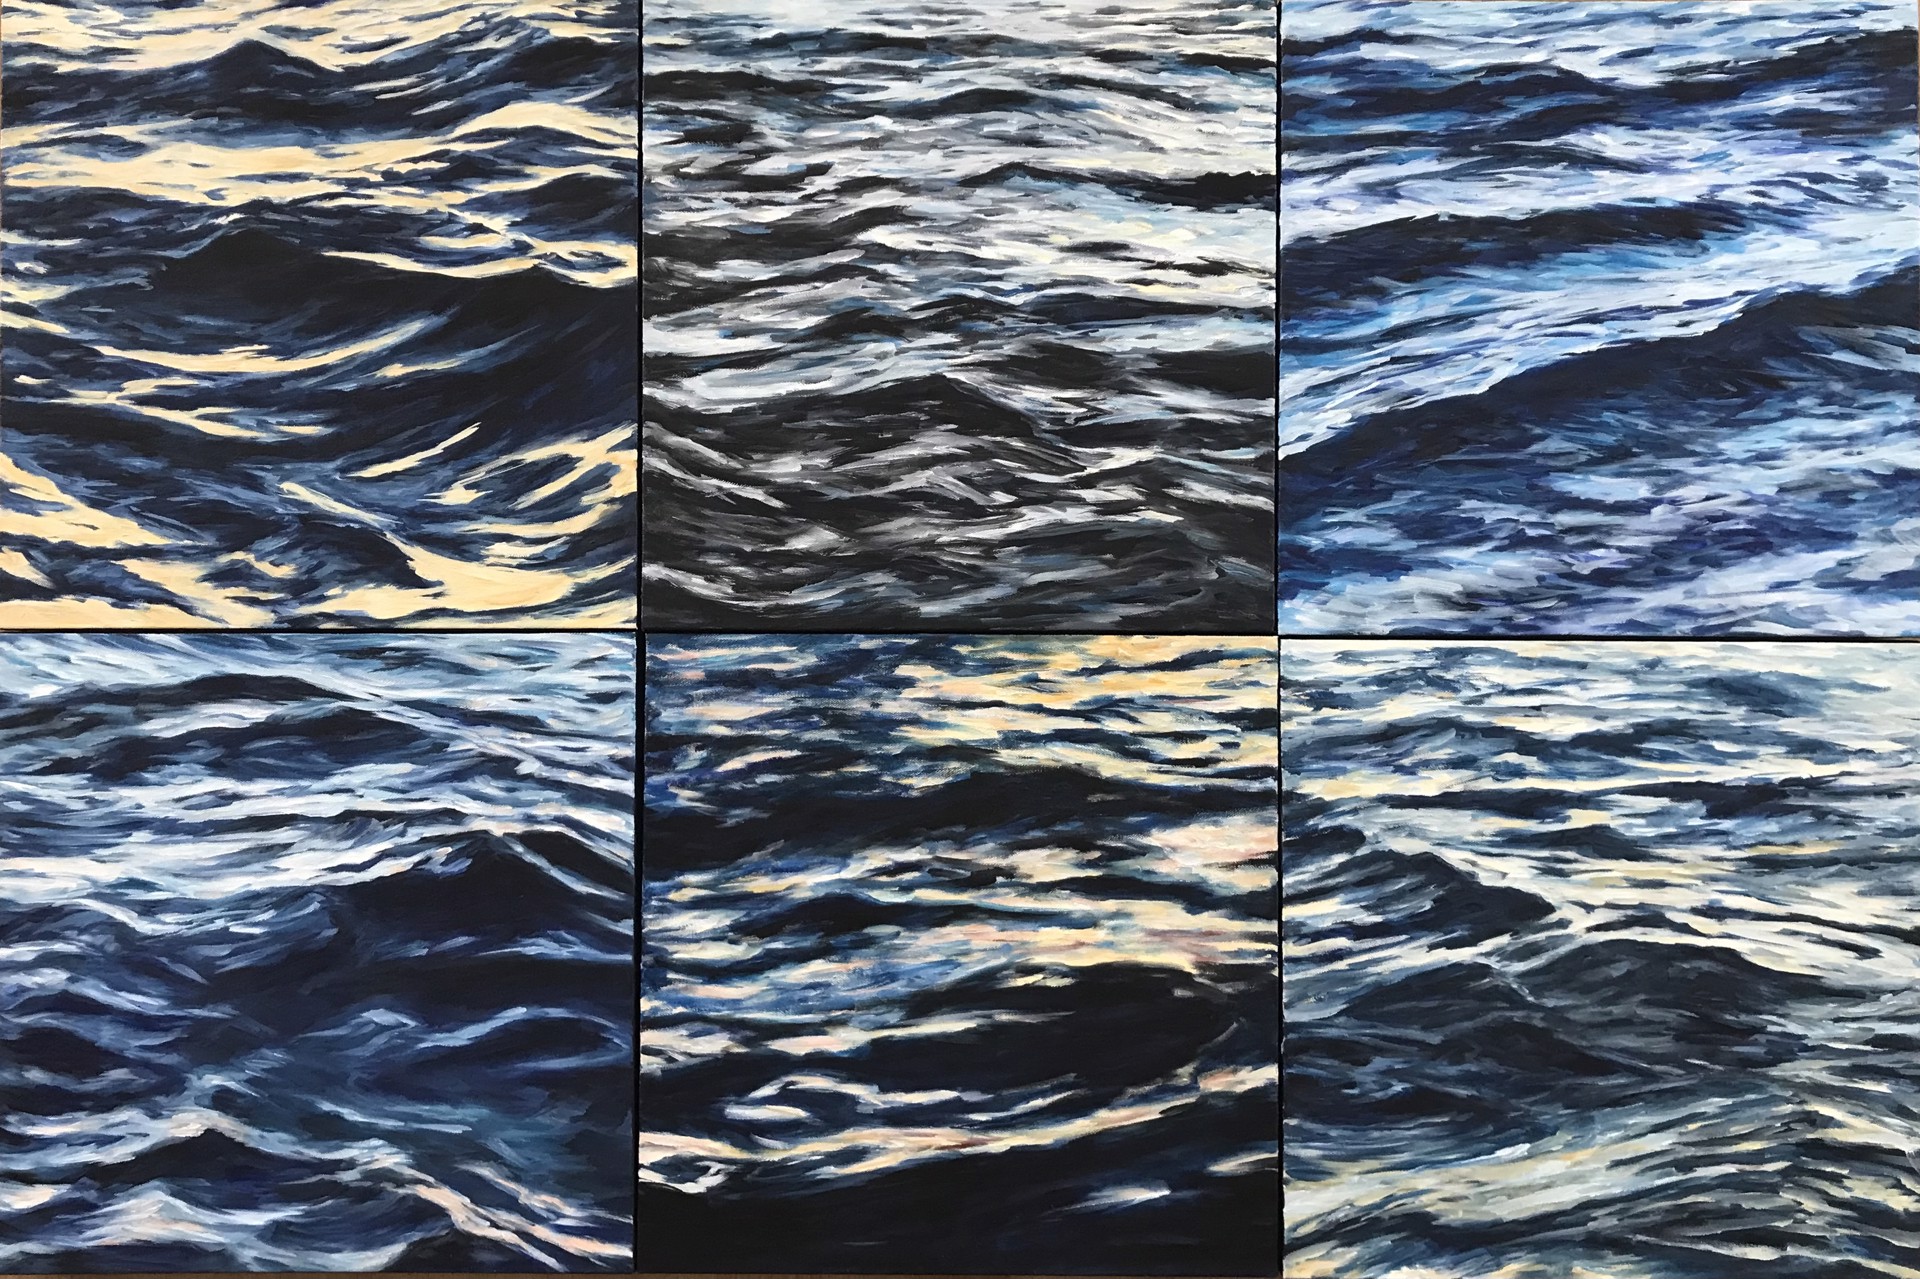 Lahaina Waves 2 by Valerie Eickmeier